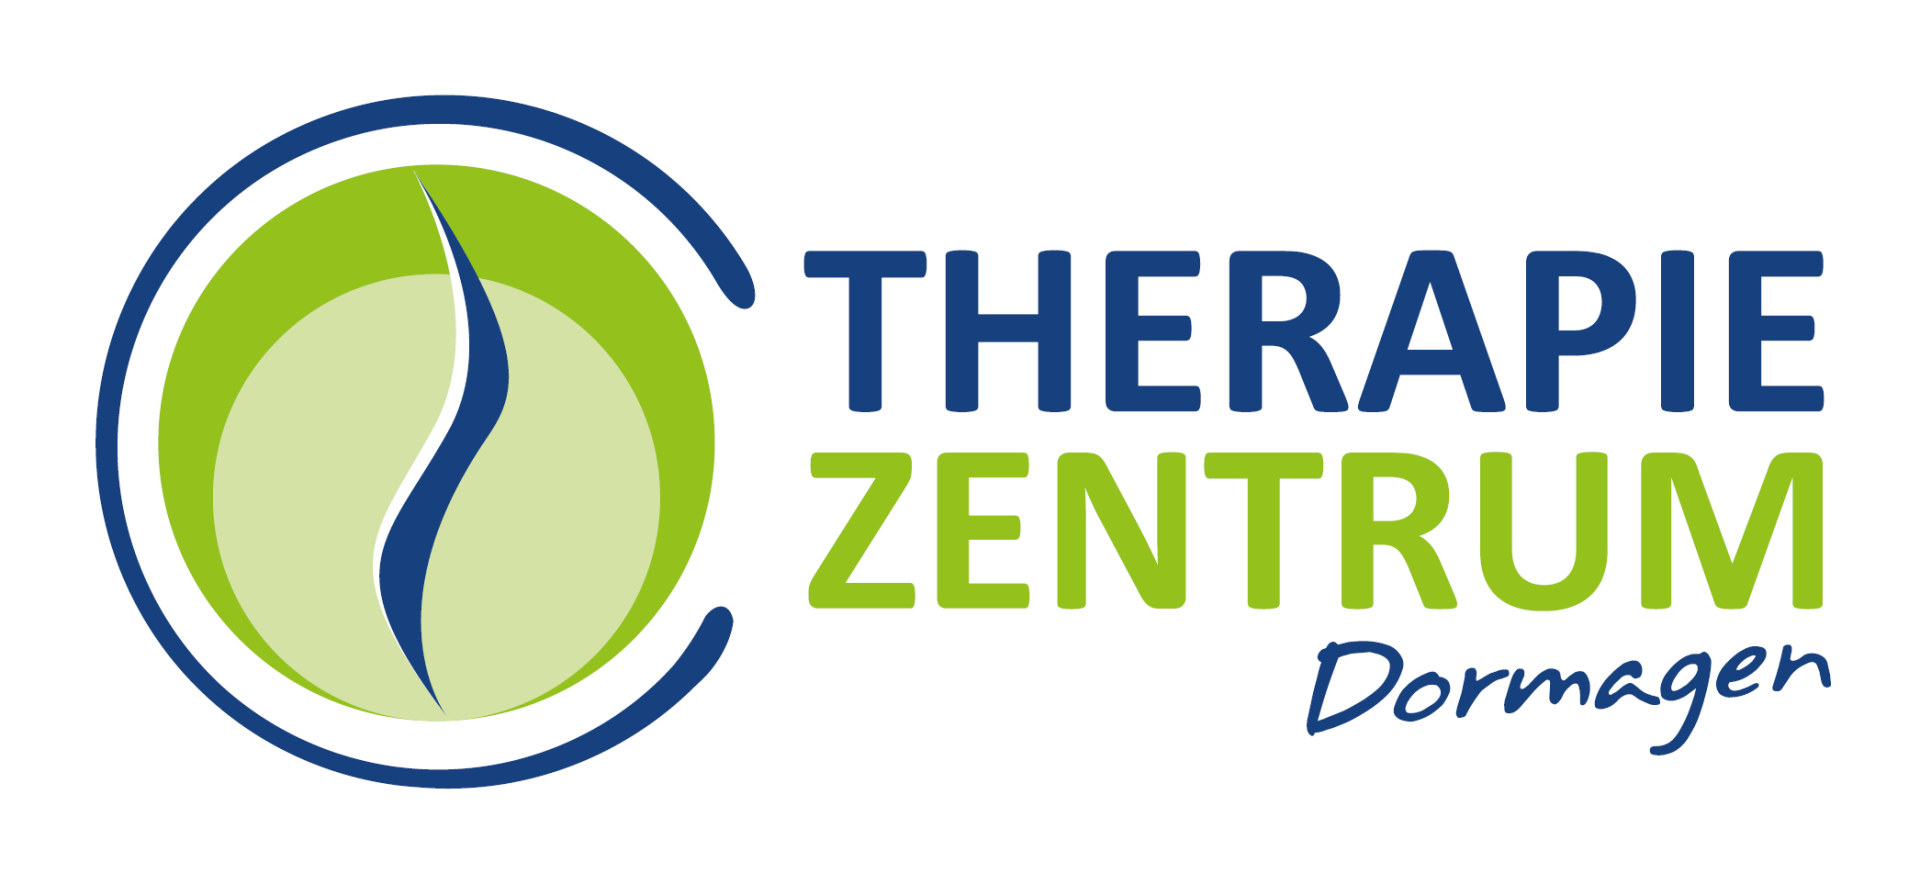 Logo Therapiezentrum Dormagen